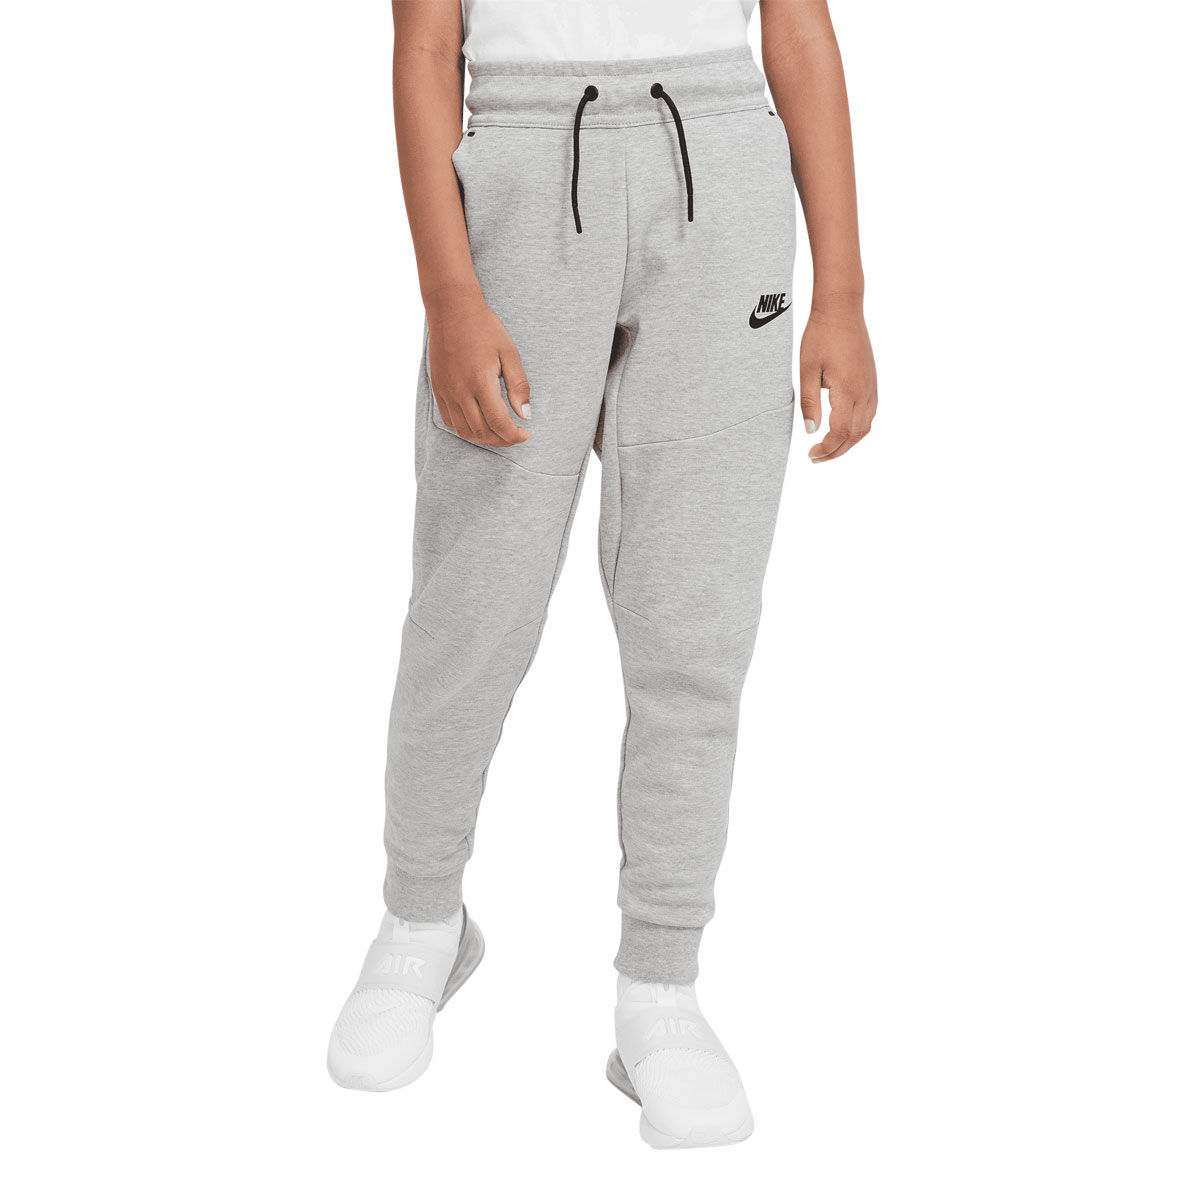 Nike Sportswear Essential Women's Fleece Pant in Black - Intersport  Australia